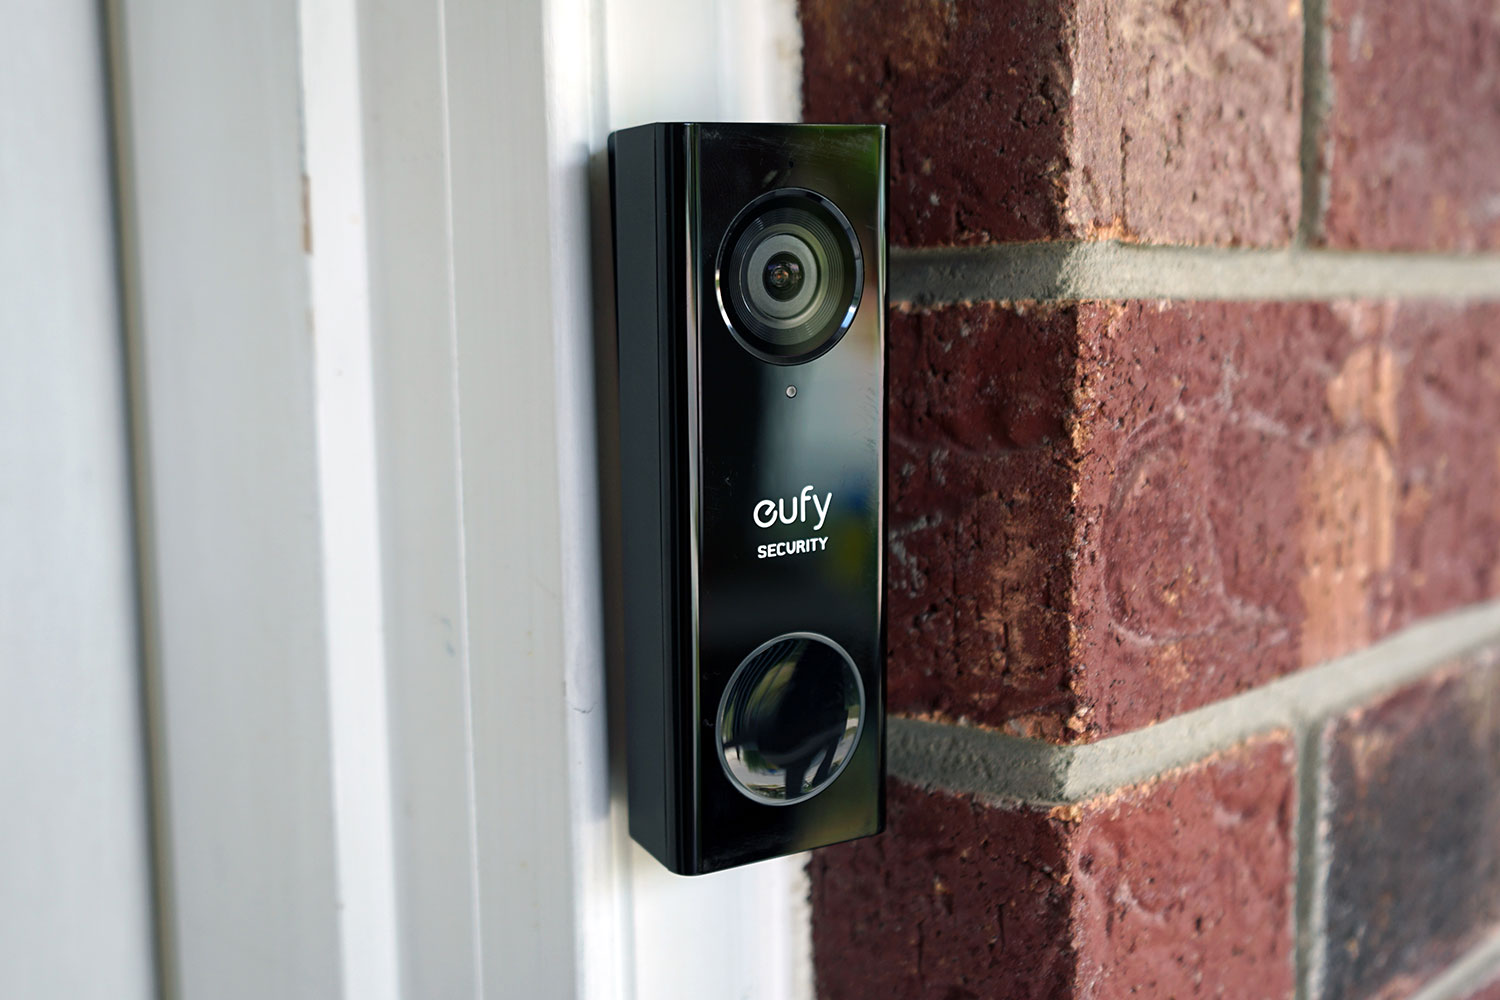 https://www.digitaltrends.com/wp-content/uploads/2019/08/eufy-security-video-doorbell-review-1.jpg?p=1